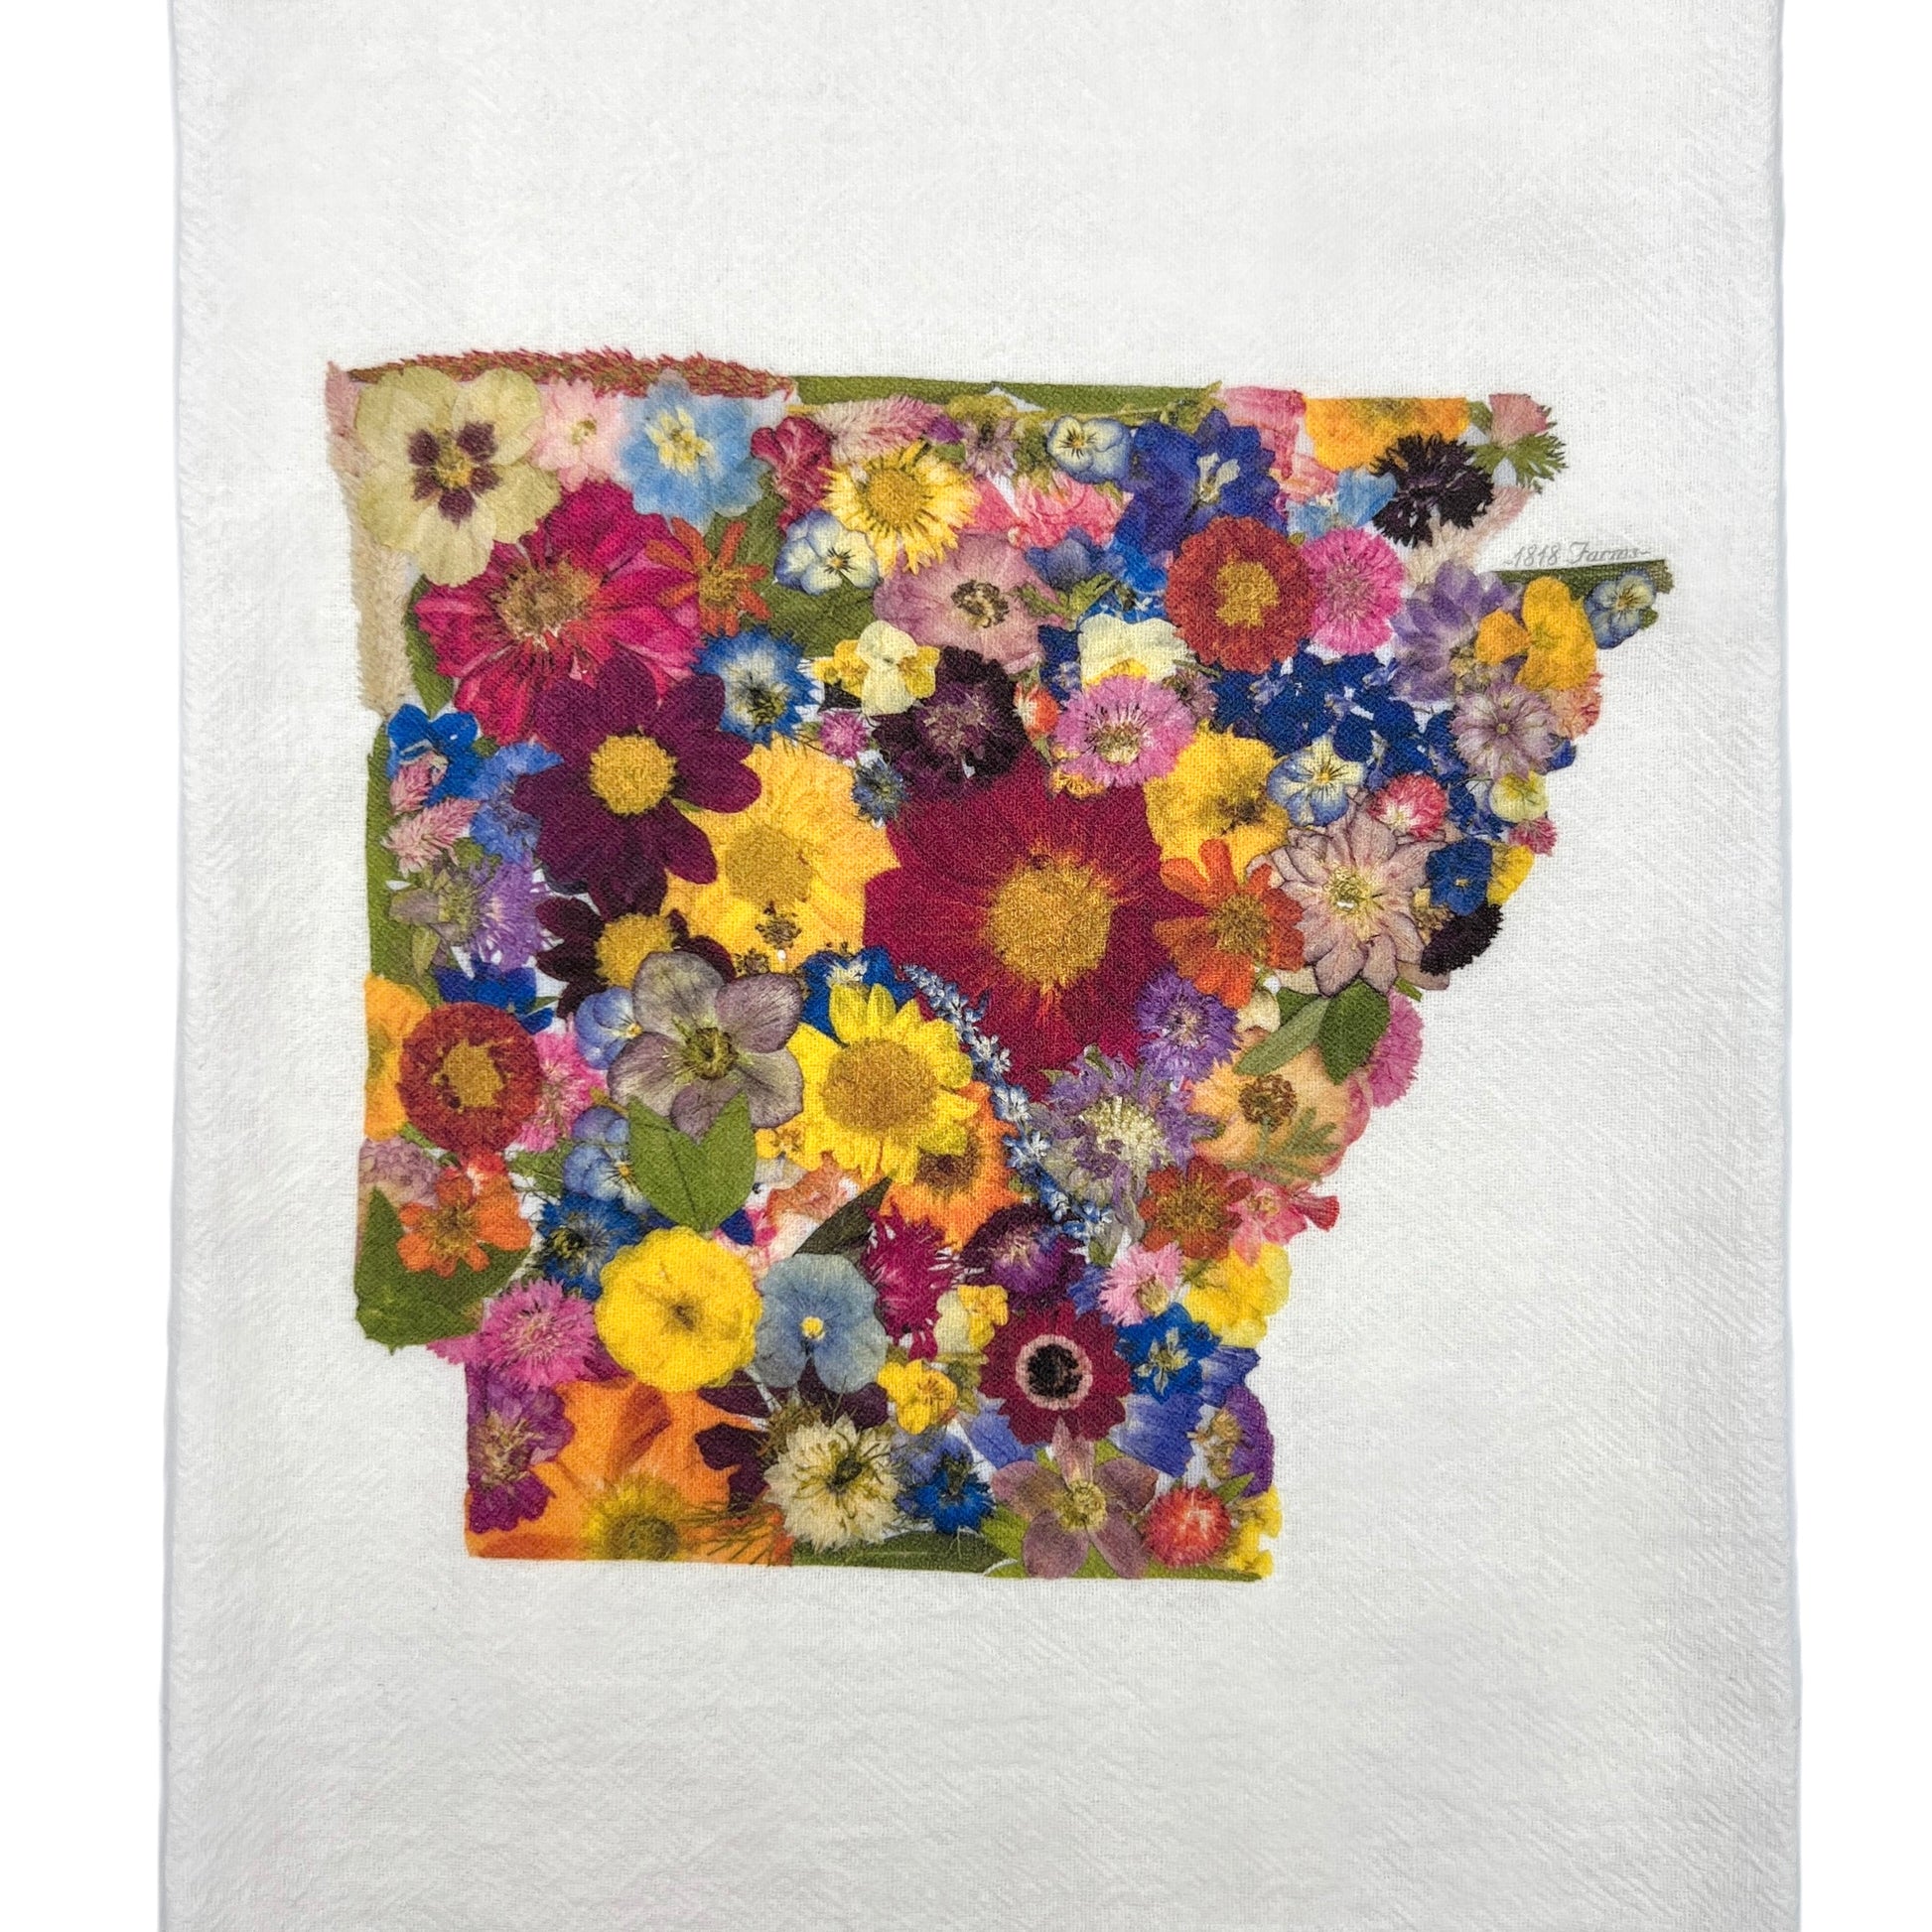 Arkansas Themed Flour Sack Towel  - "Where I Bloom" Collection Towel 1818 Farms   